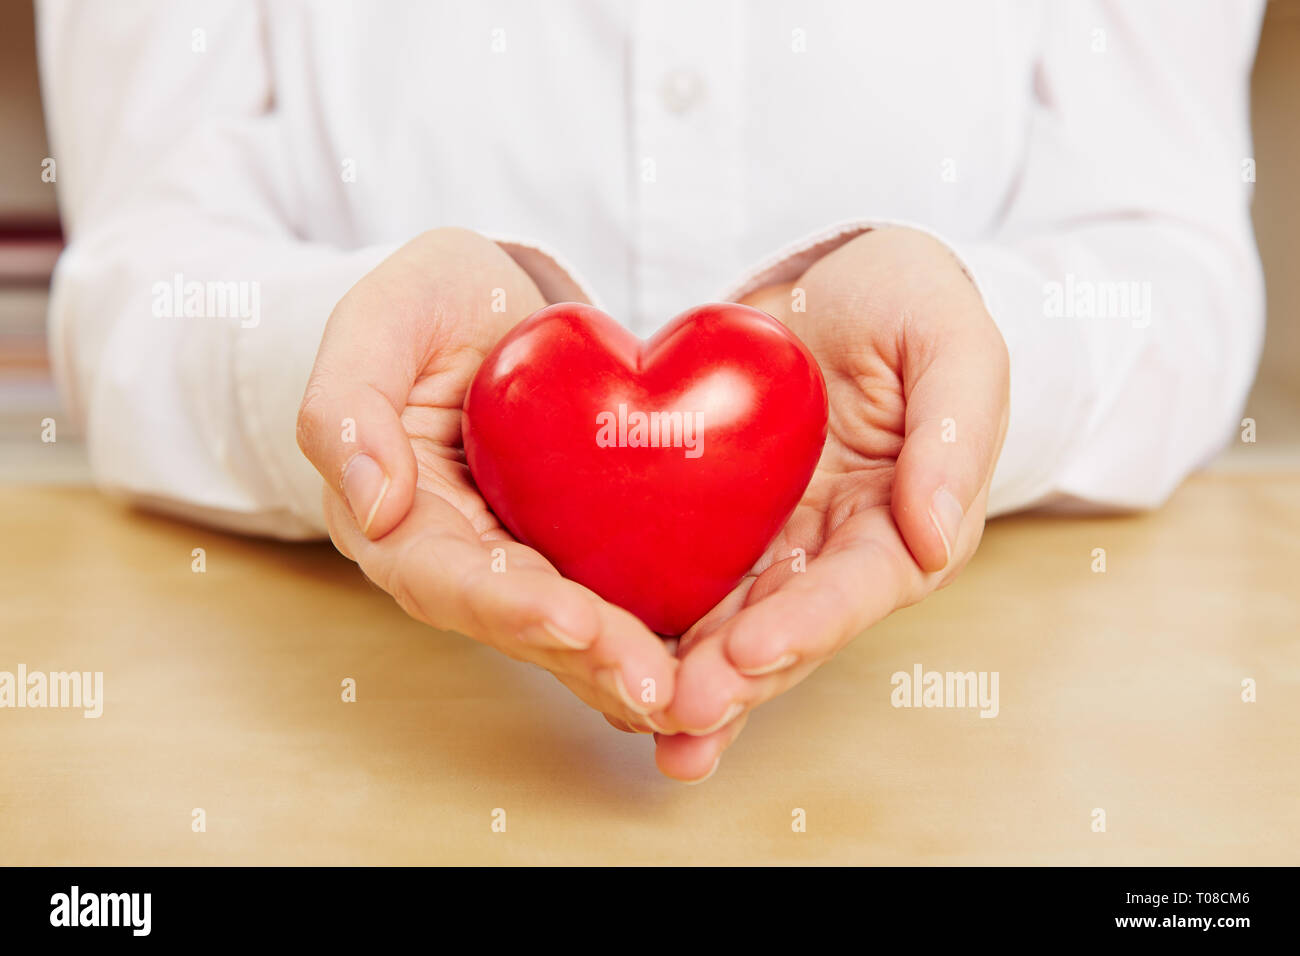 Frau hält ein kleines rotes Herz in der Hand als Symbol der Liebe Stockfoto